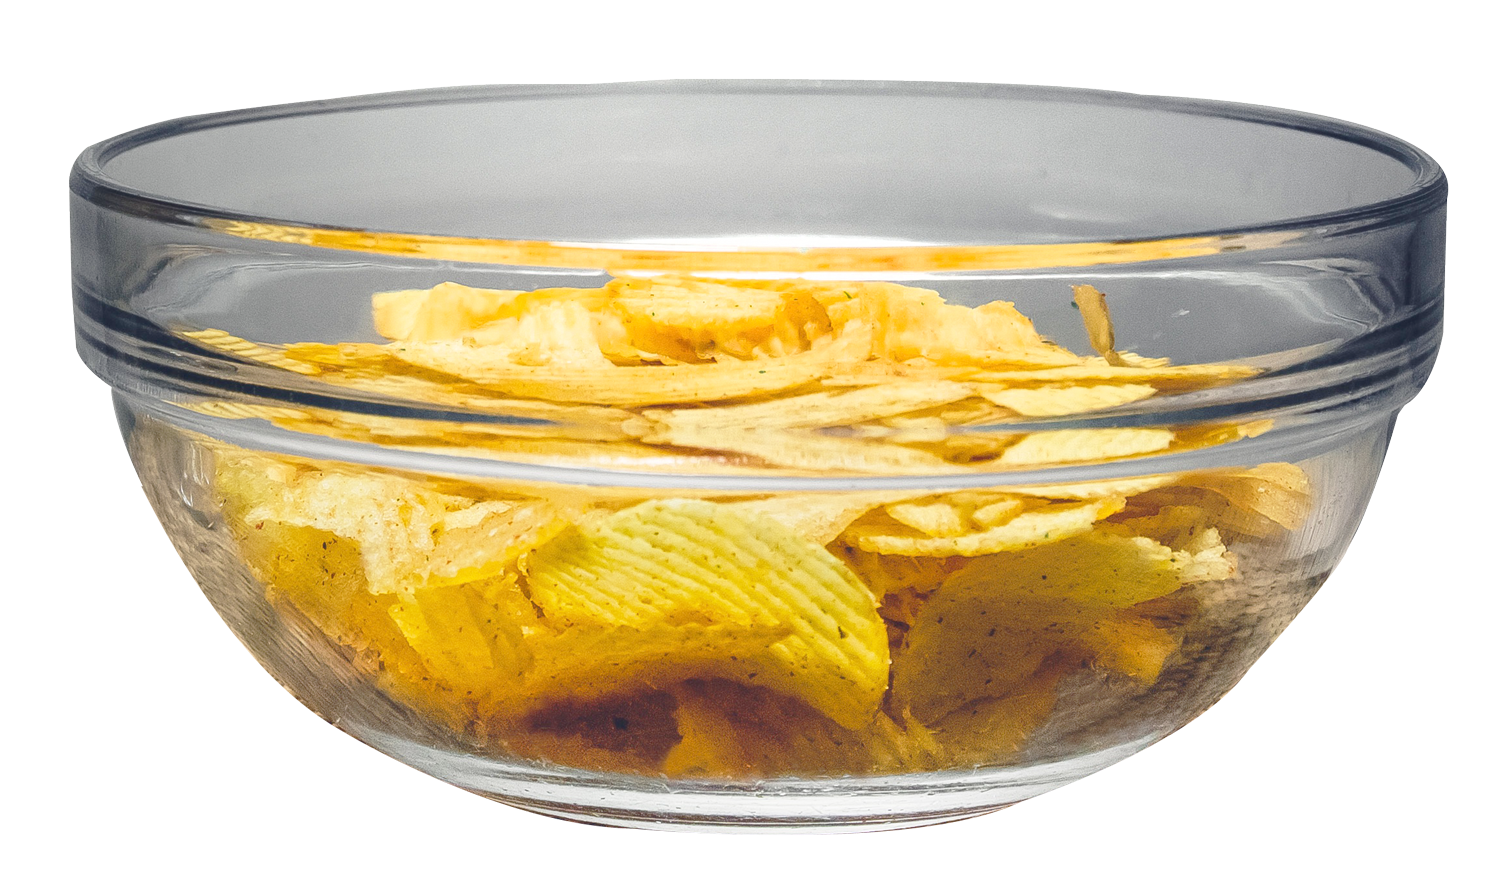 Chips Bowl Crisp Free Download Image PNG Image